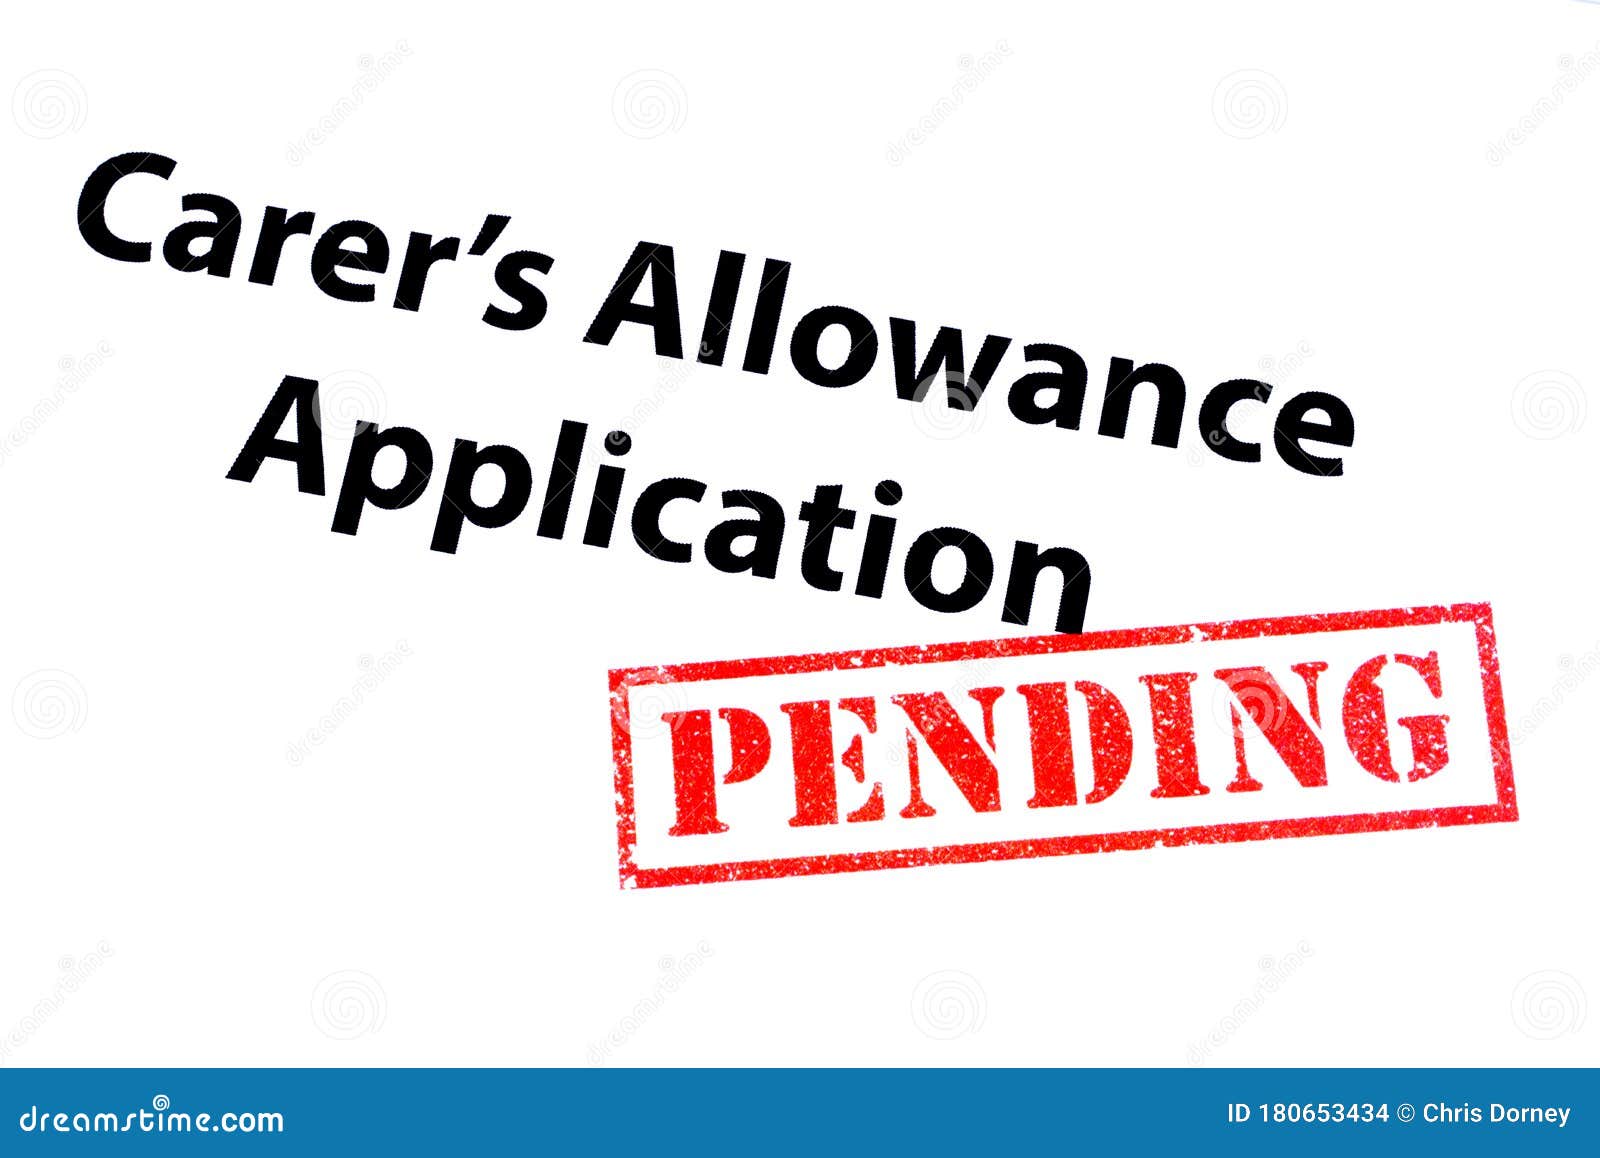 carers allowance application pending